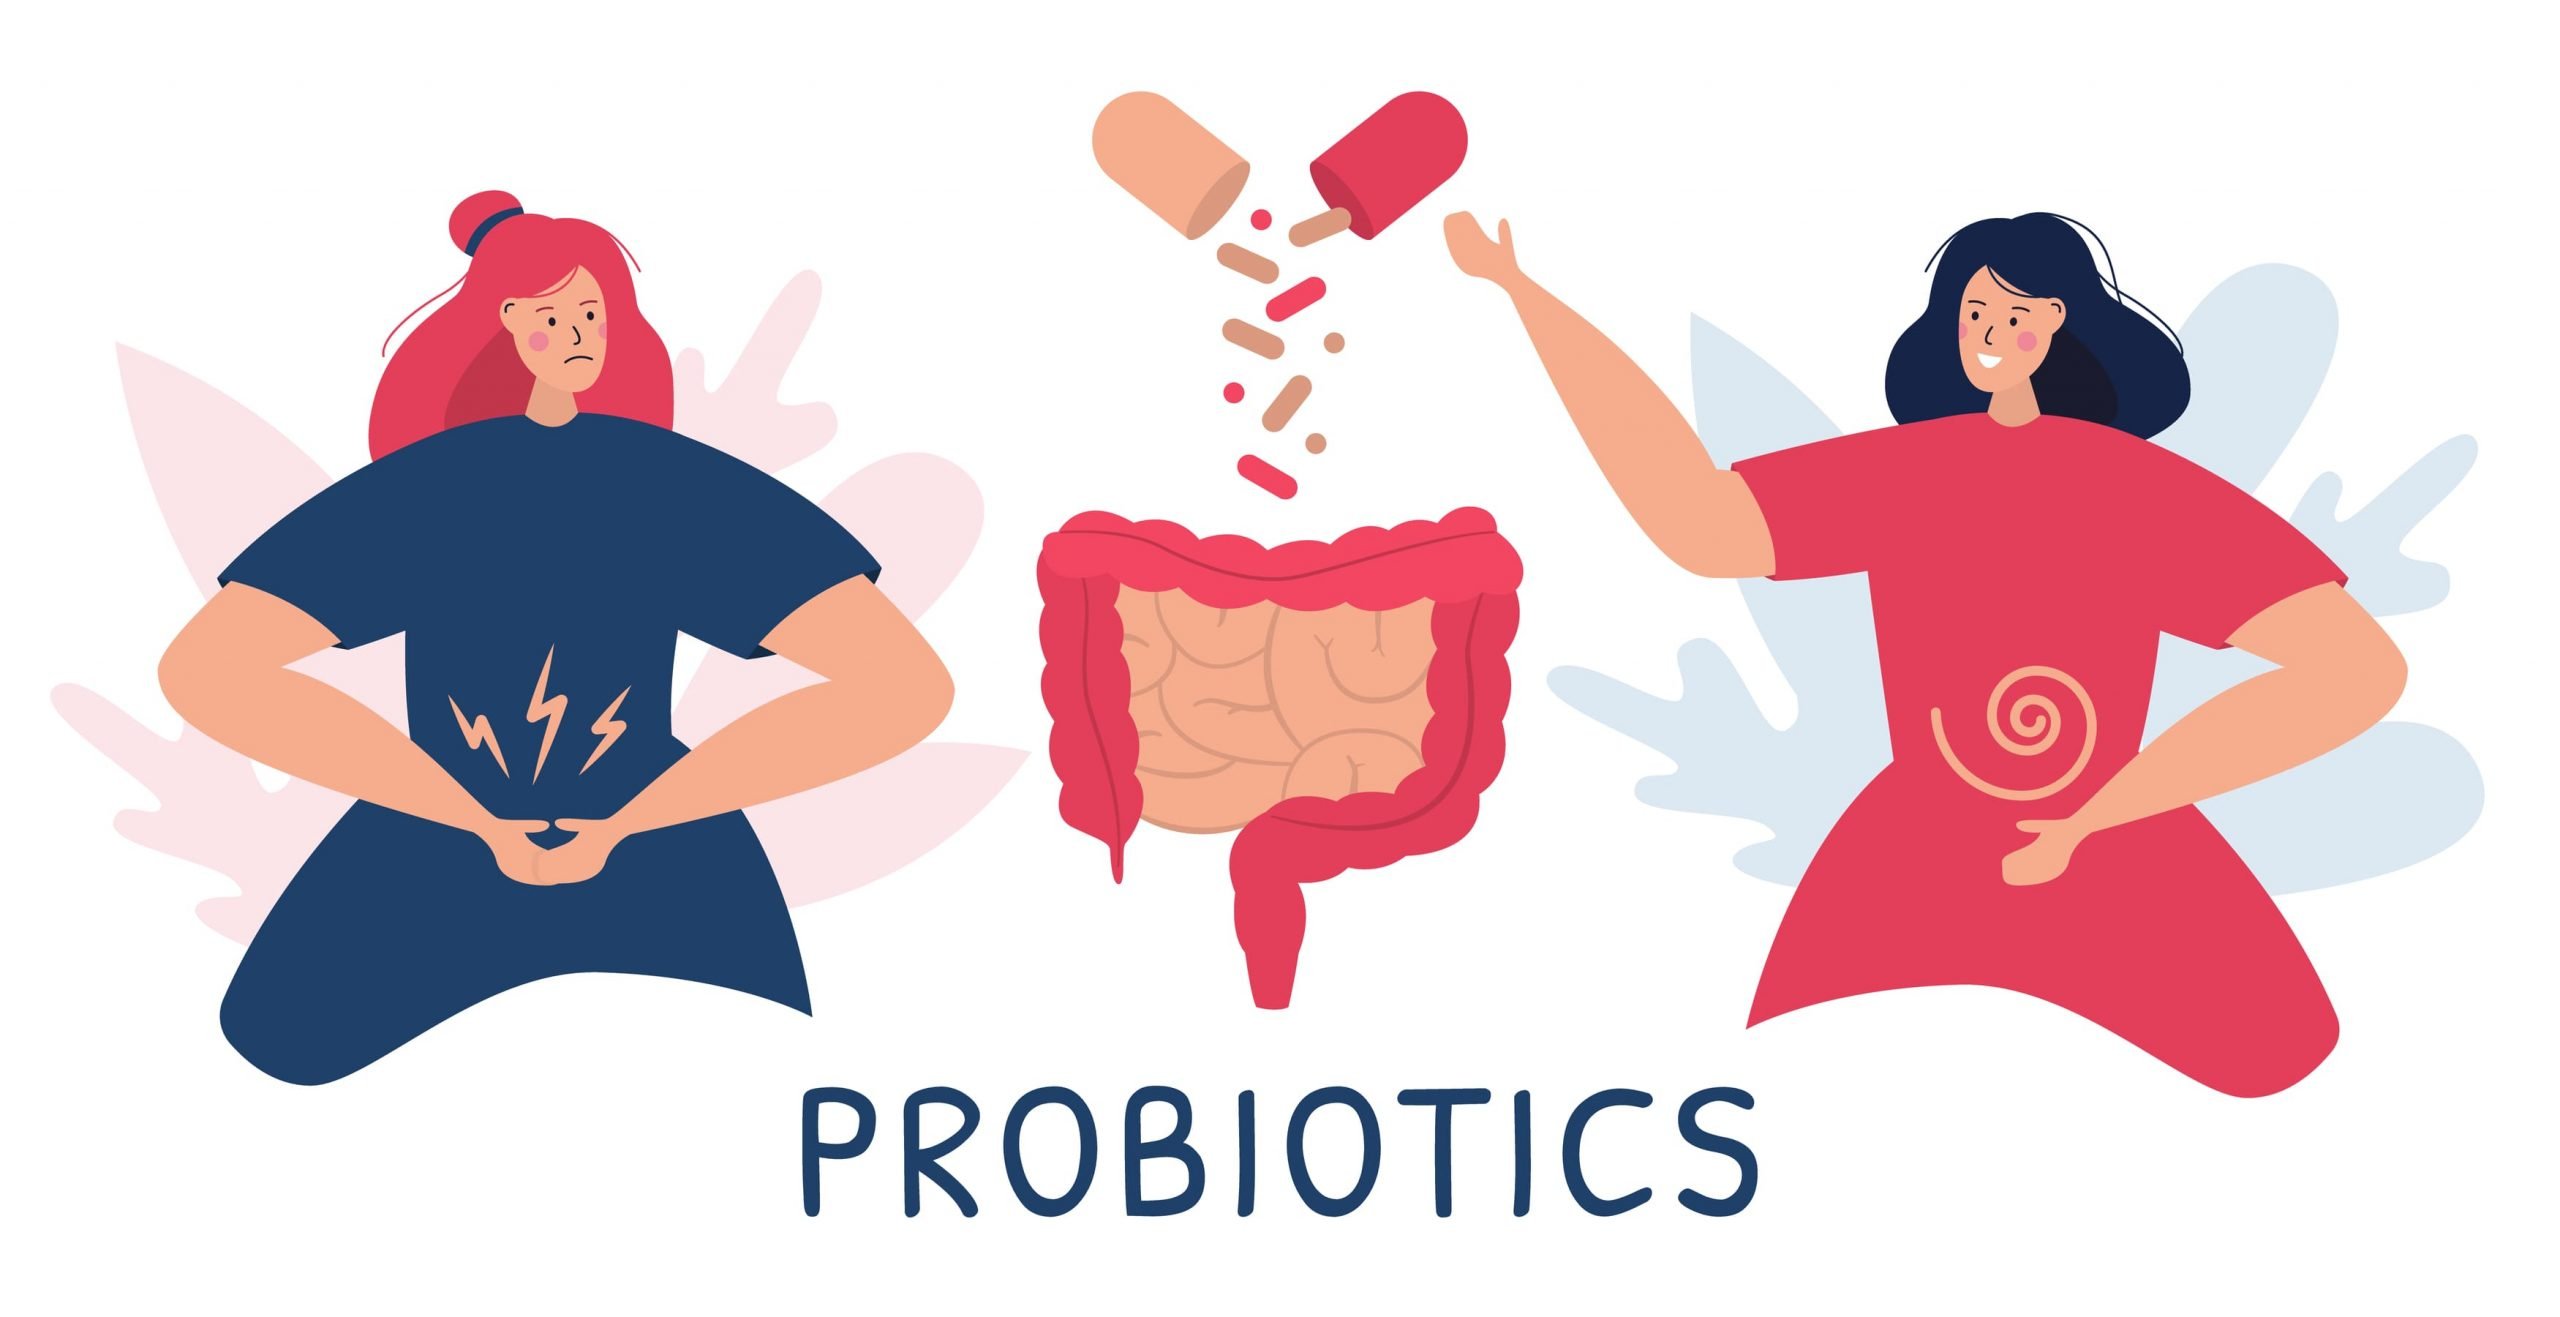 Tìm hiểu về Probiotics - nhóm vi khuẩn có lợi cho tiêu hóa